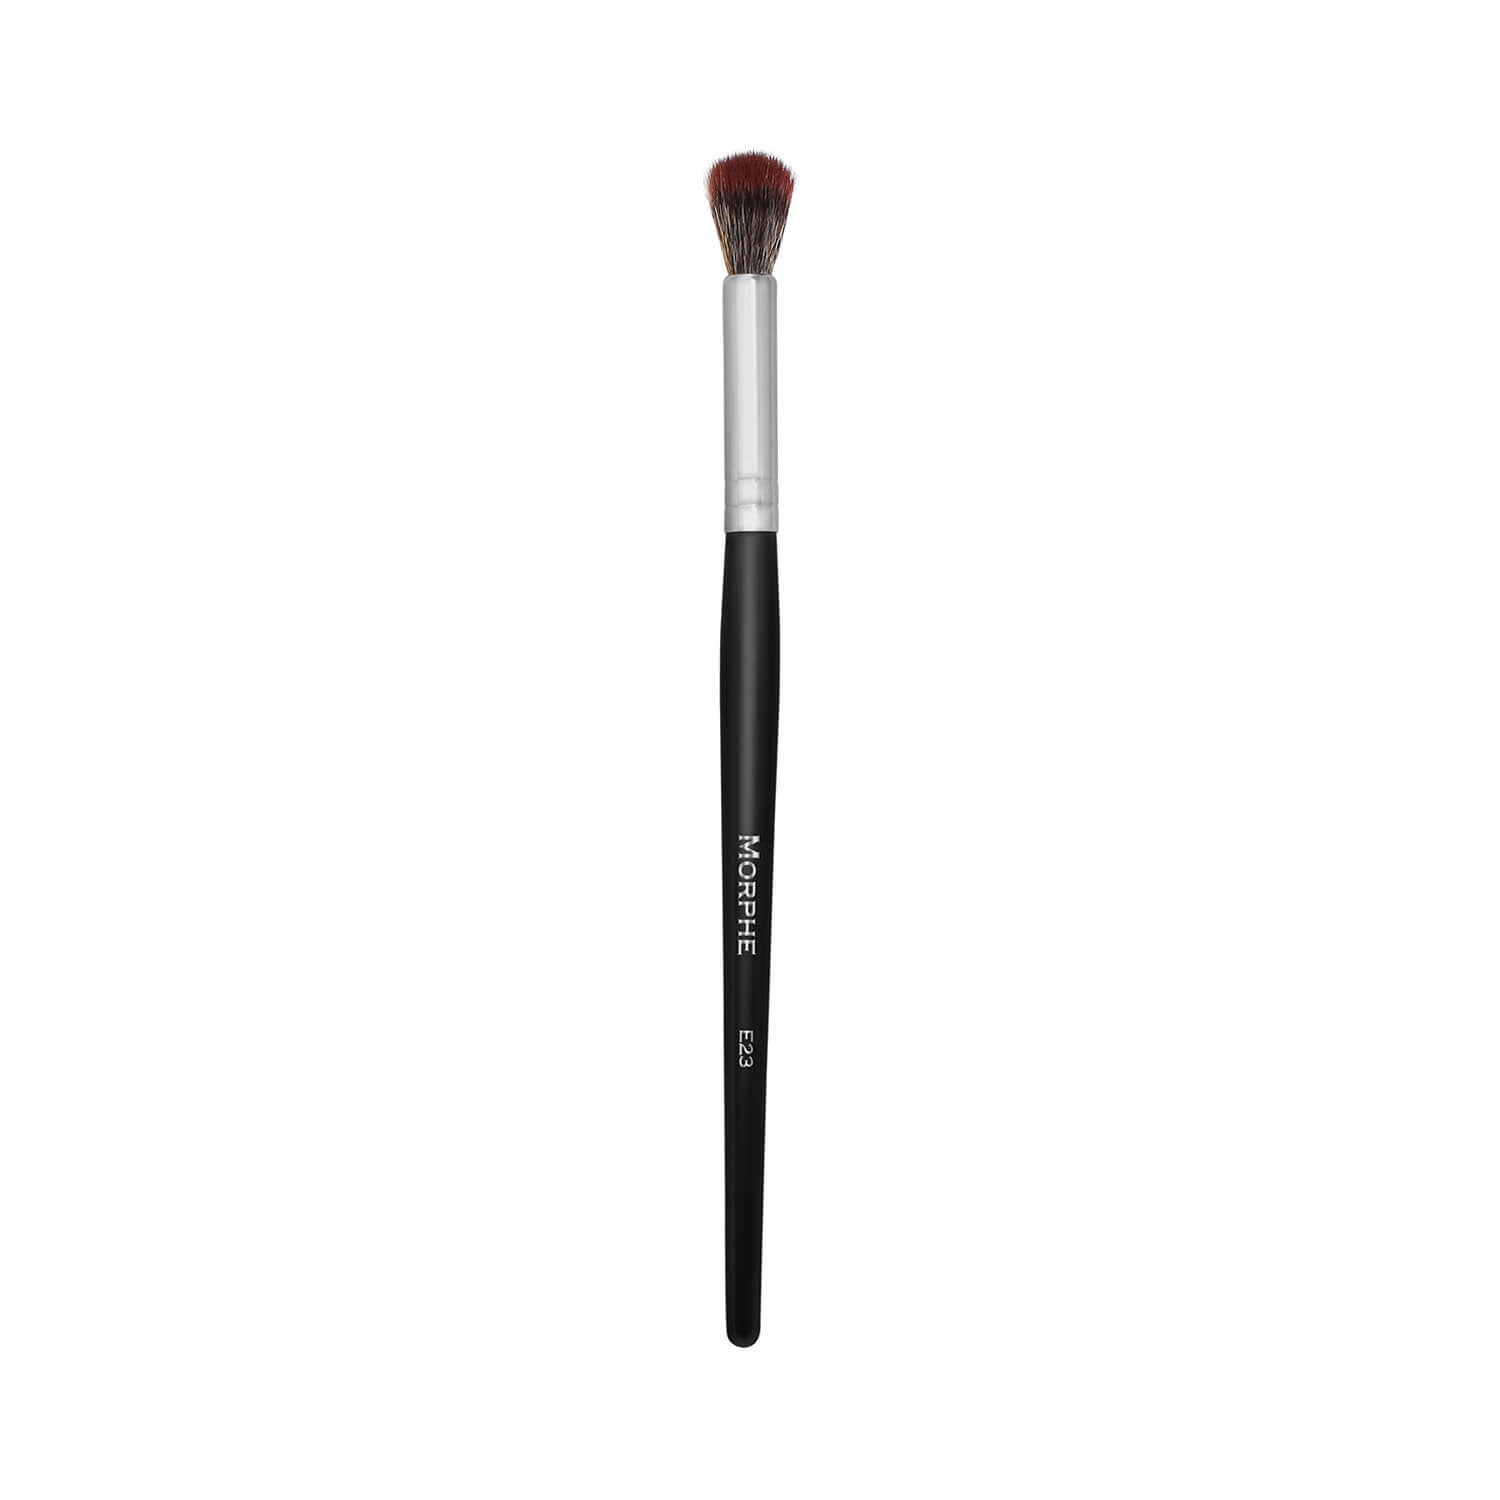 Morphe Cosmetics E23 Deluxe Blender Brush